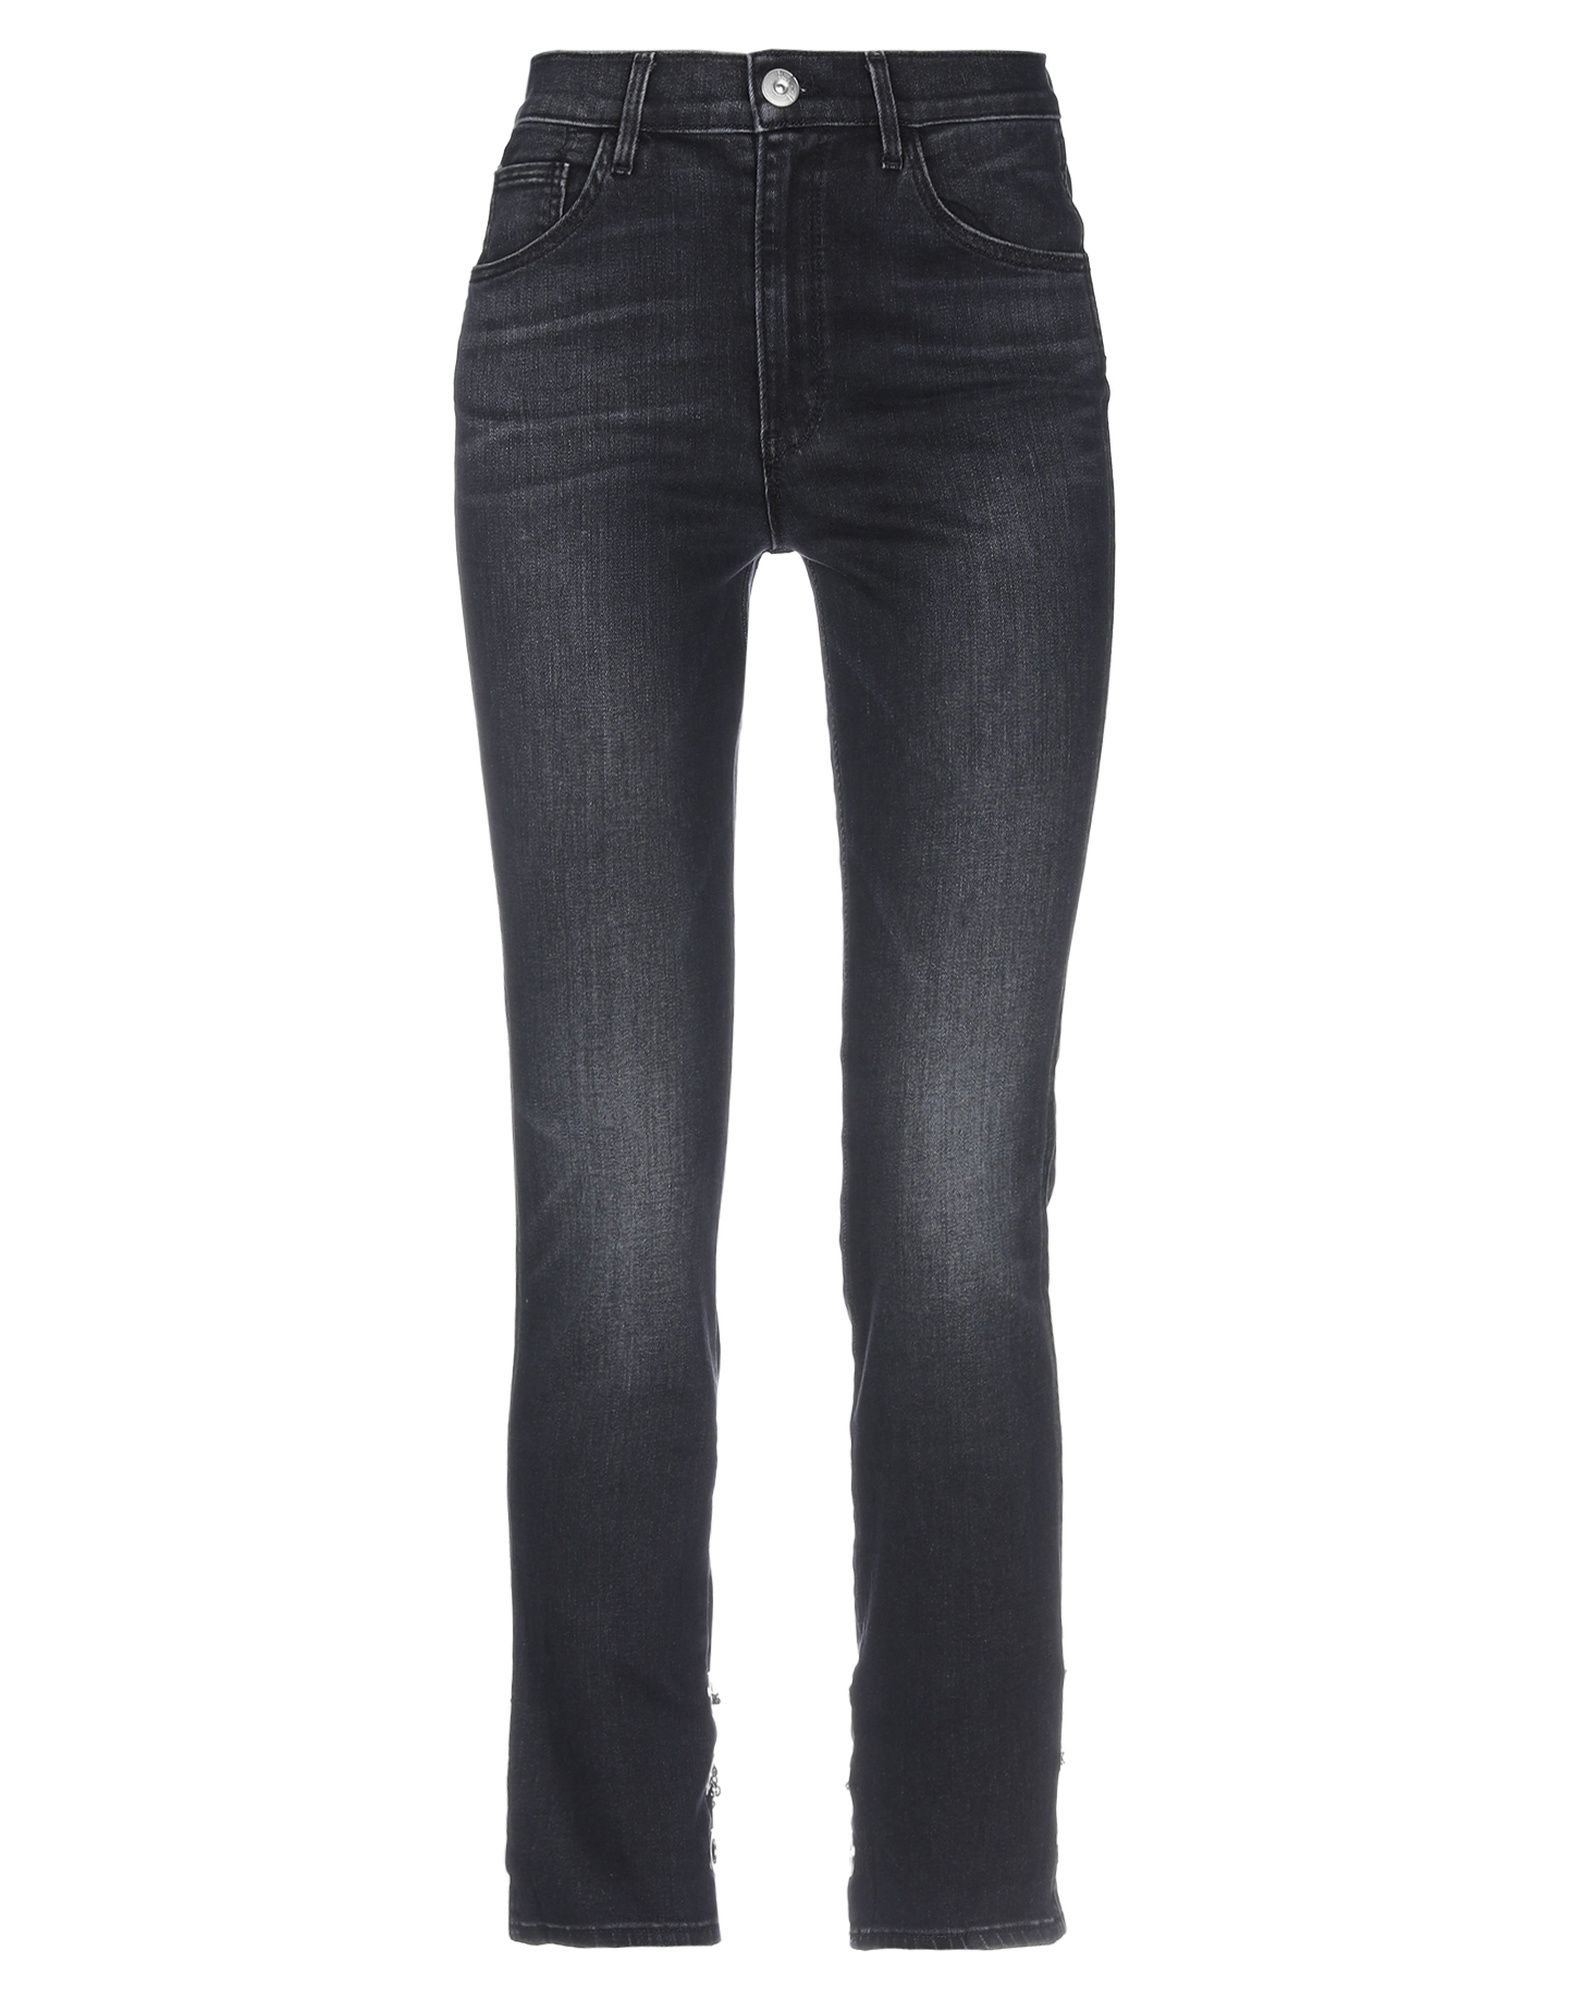 Shop 3x1 Woman Jeans Black Size 26 Cotton, Elastomultiester, Elastane